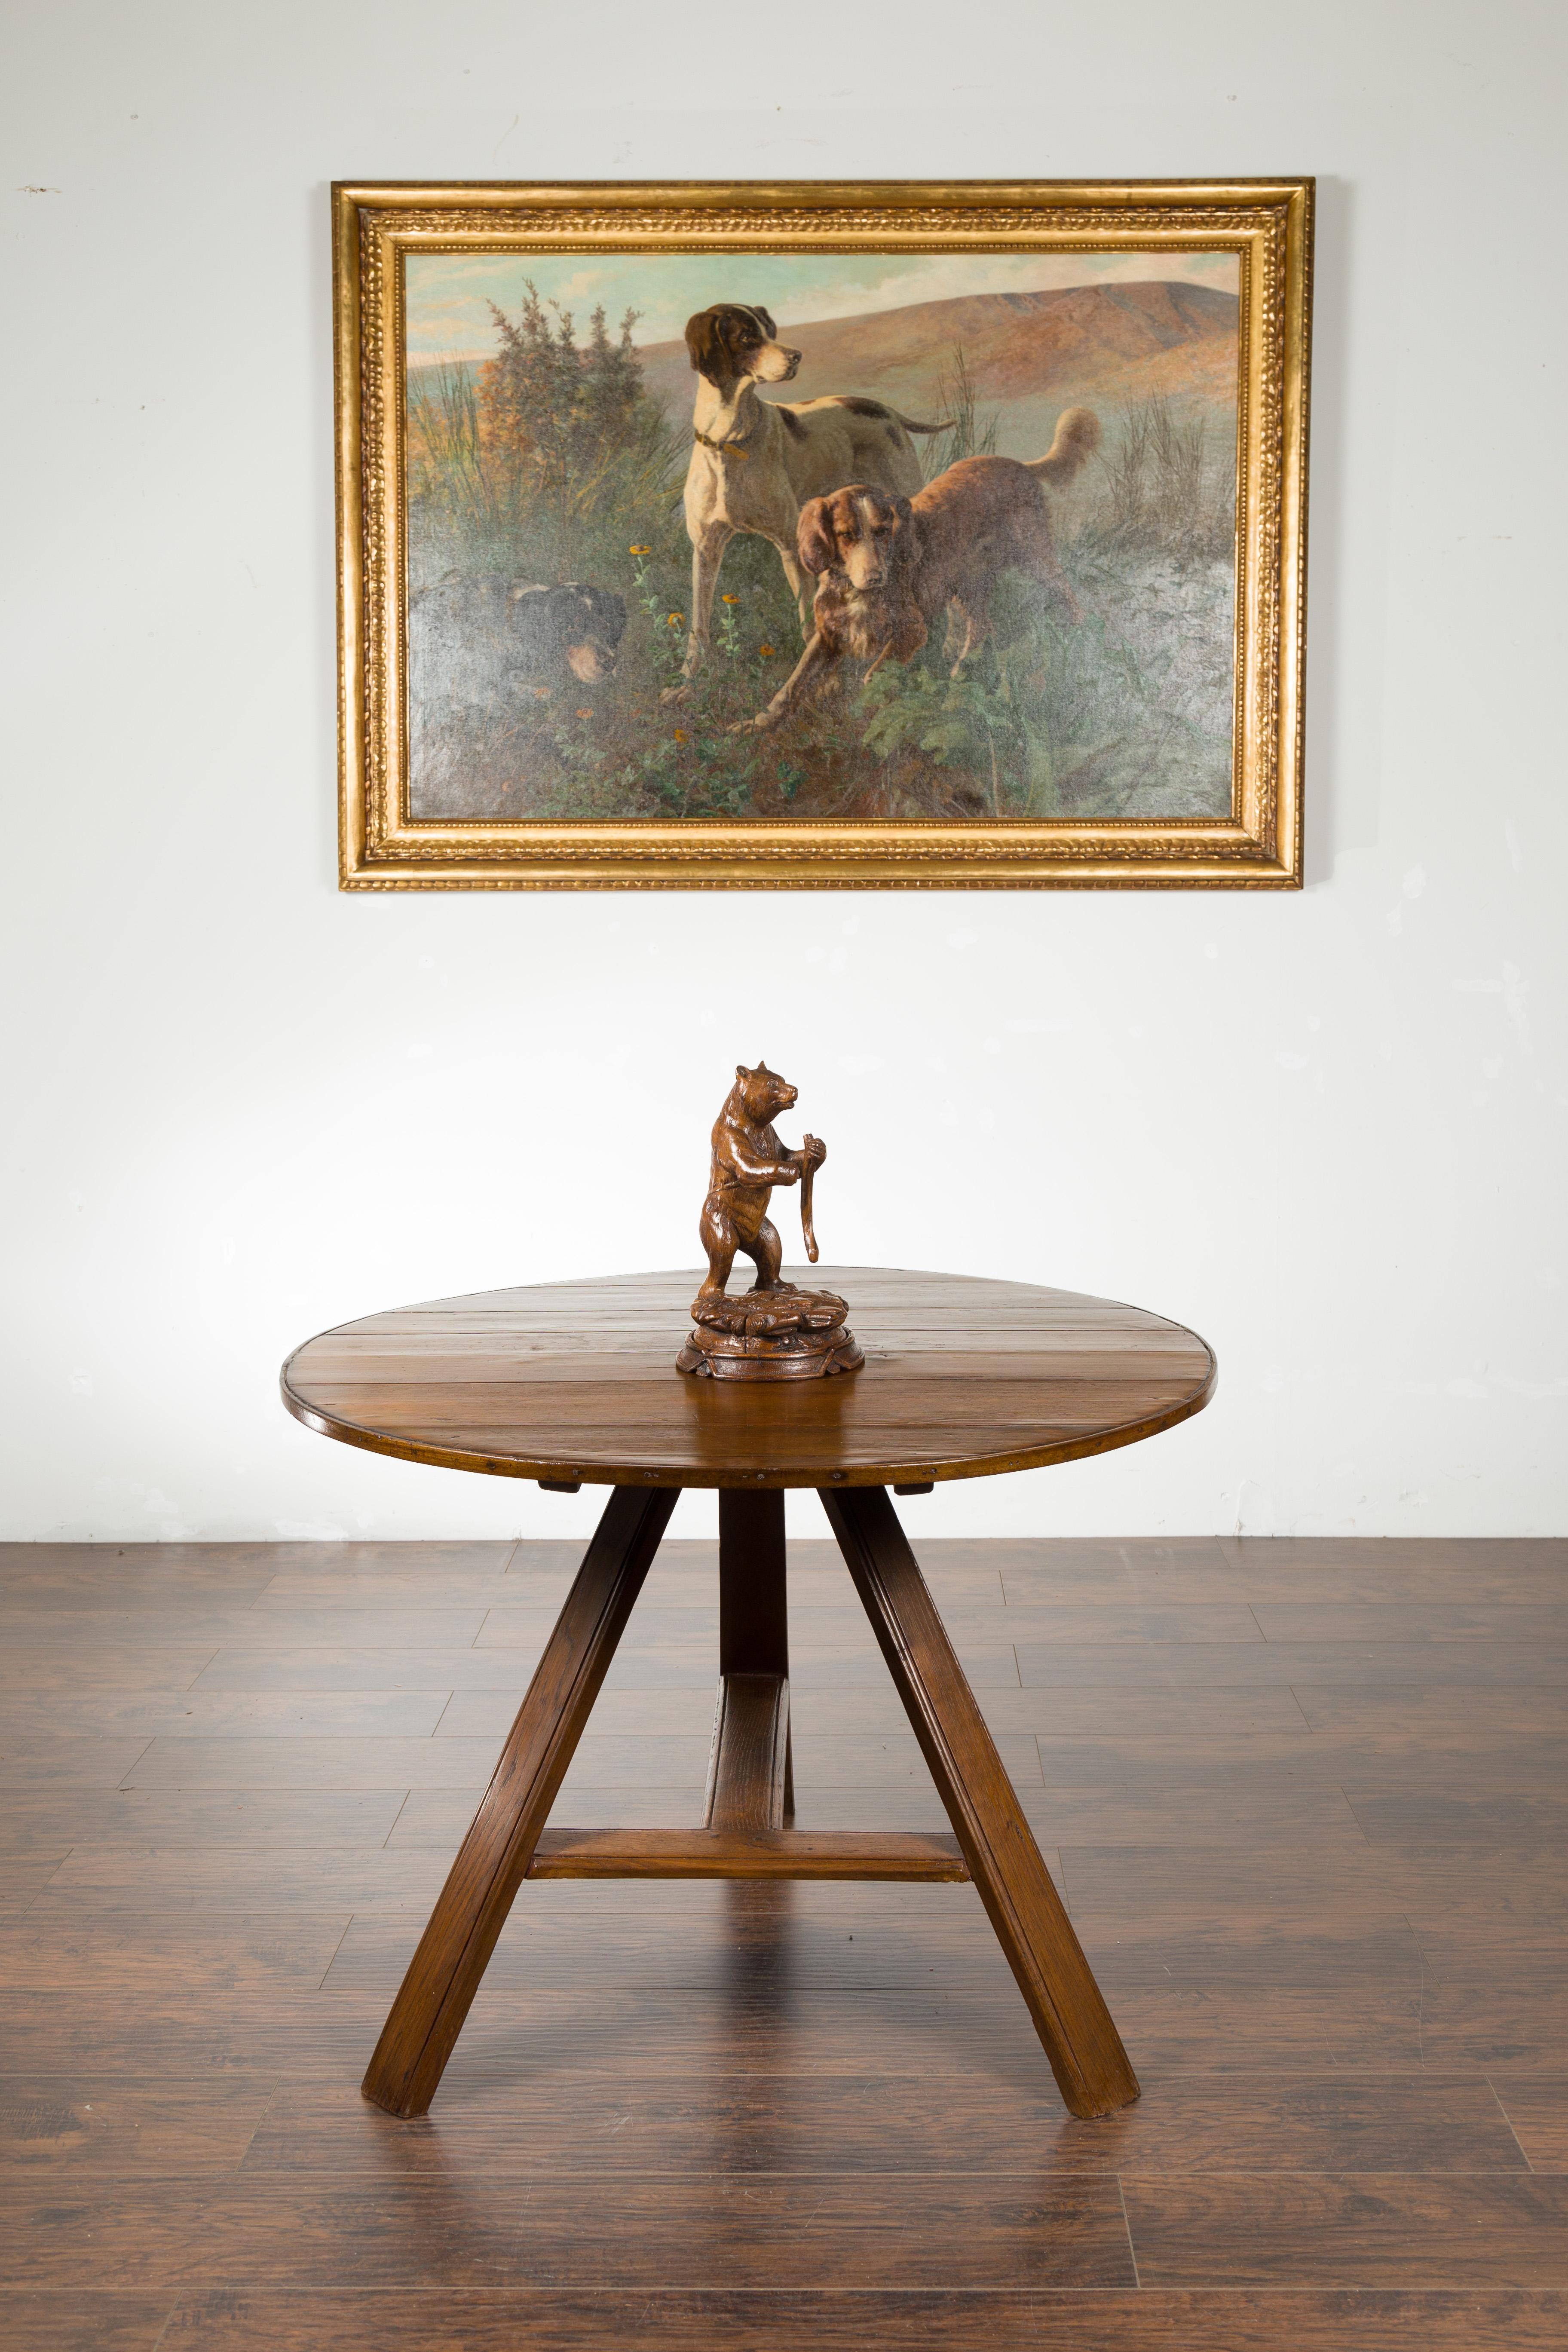 Eine geschnitzte Schwarzwälder Holzskulptur aus dem späten 19. Jahrhundert, die einen auf einem runden Sockel stehenden Bären darstellt. Diese im letzten Jahrzehnt des 19. Jahrhunderts geschaffene Schwarzwaldskulptur zeigt einen Bären, der auf den